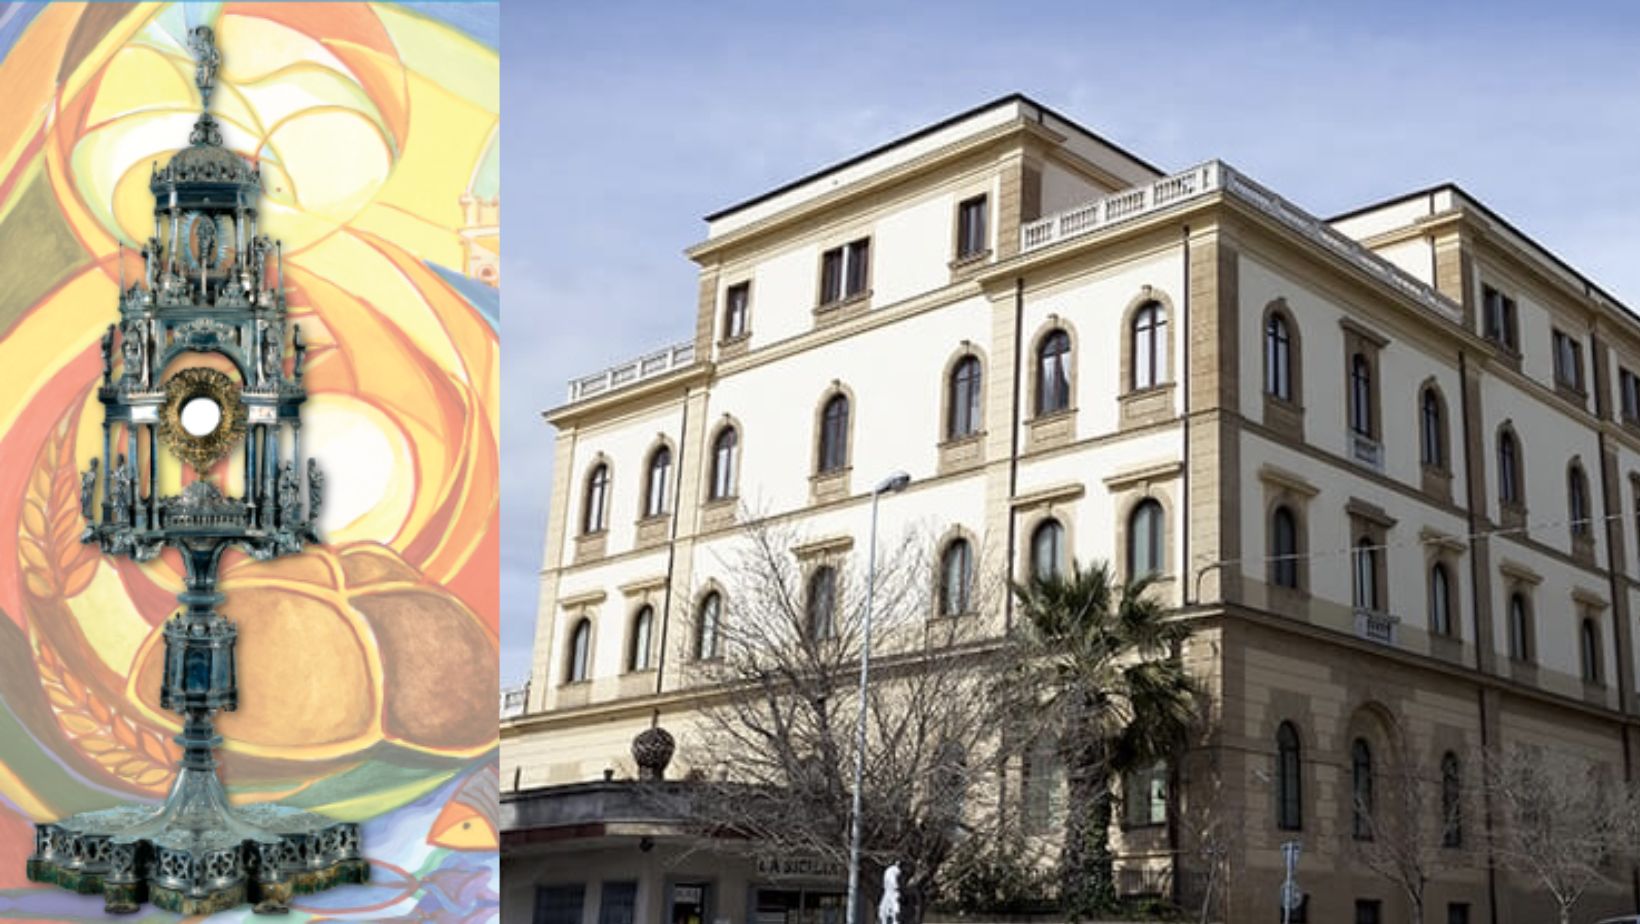 Caltanissetta, “il dono del pane”: al museo diocesano una mostra di oreficeria siciliana